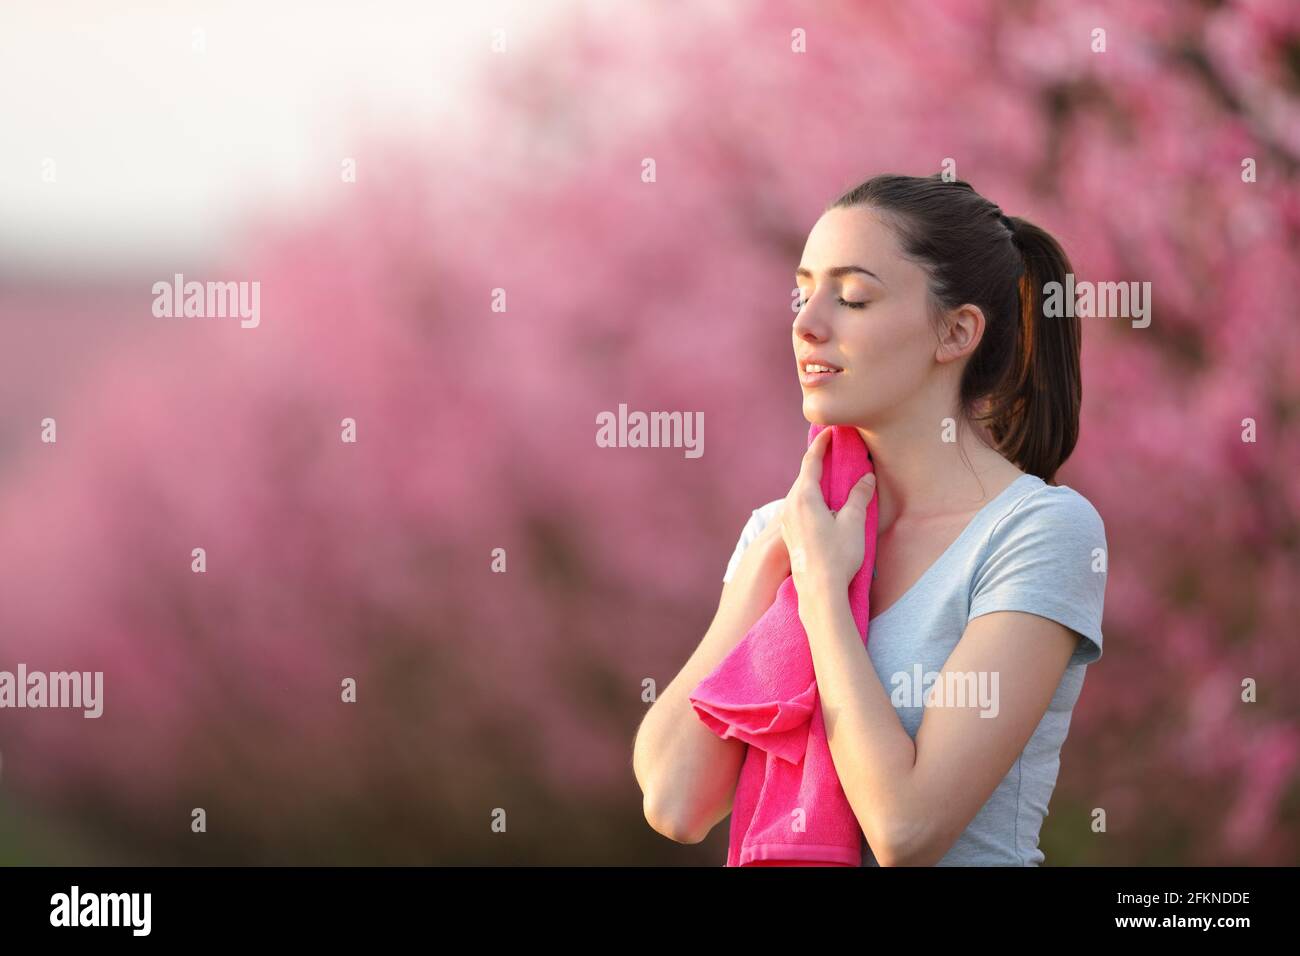 Erschöpfter Läufer trocknet nach dem Lauf den Schweiß mit einem rosafarbenen Handtuch aus In einem Feld Stockfoto